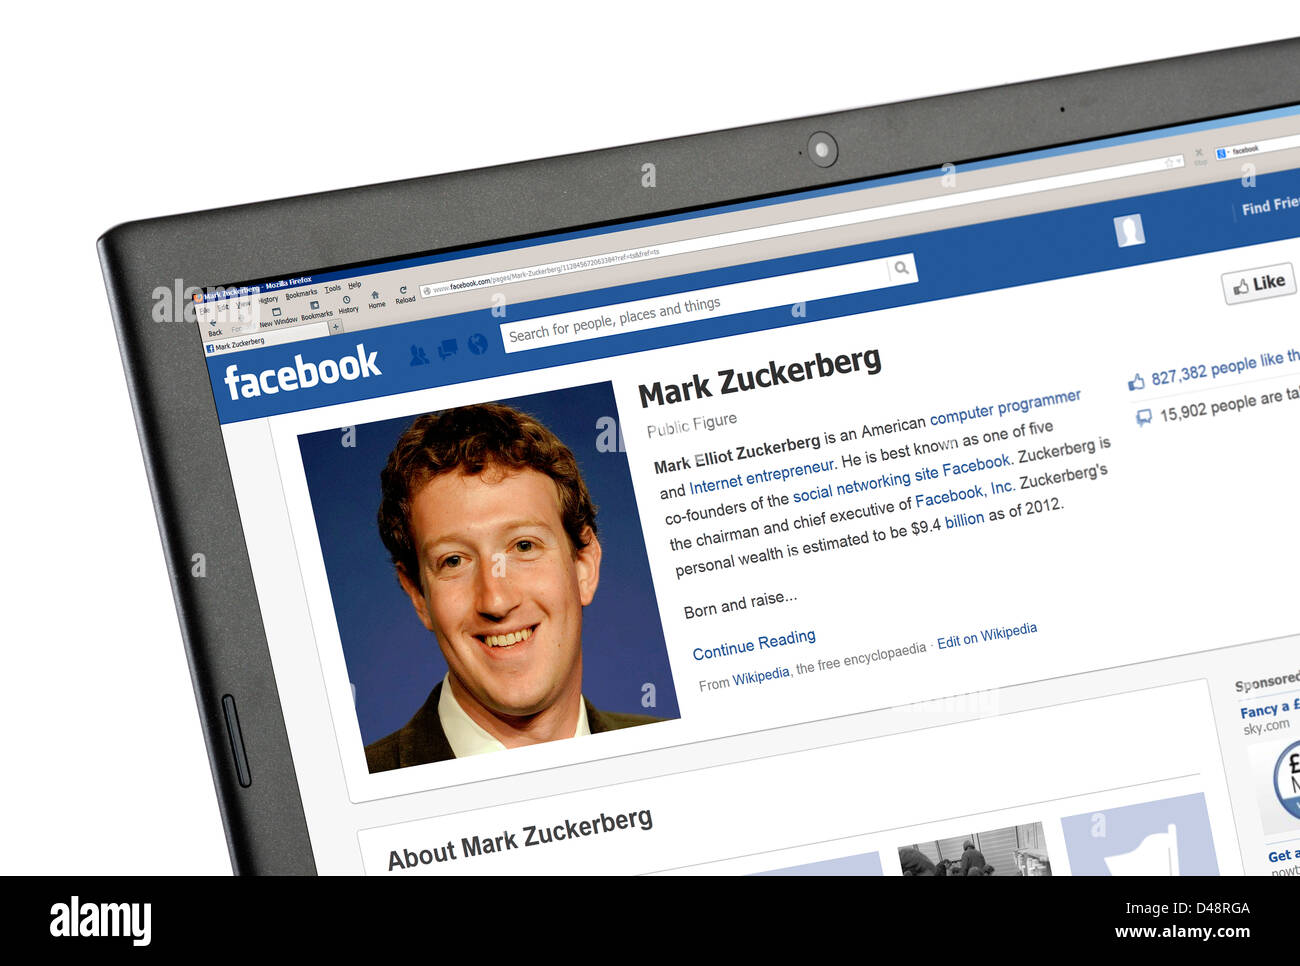 Le profil Facebook de Mark Zuckerberg, l'un des fondateurs, visibles sur l'ordinateur portable Banque D'Images